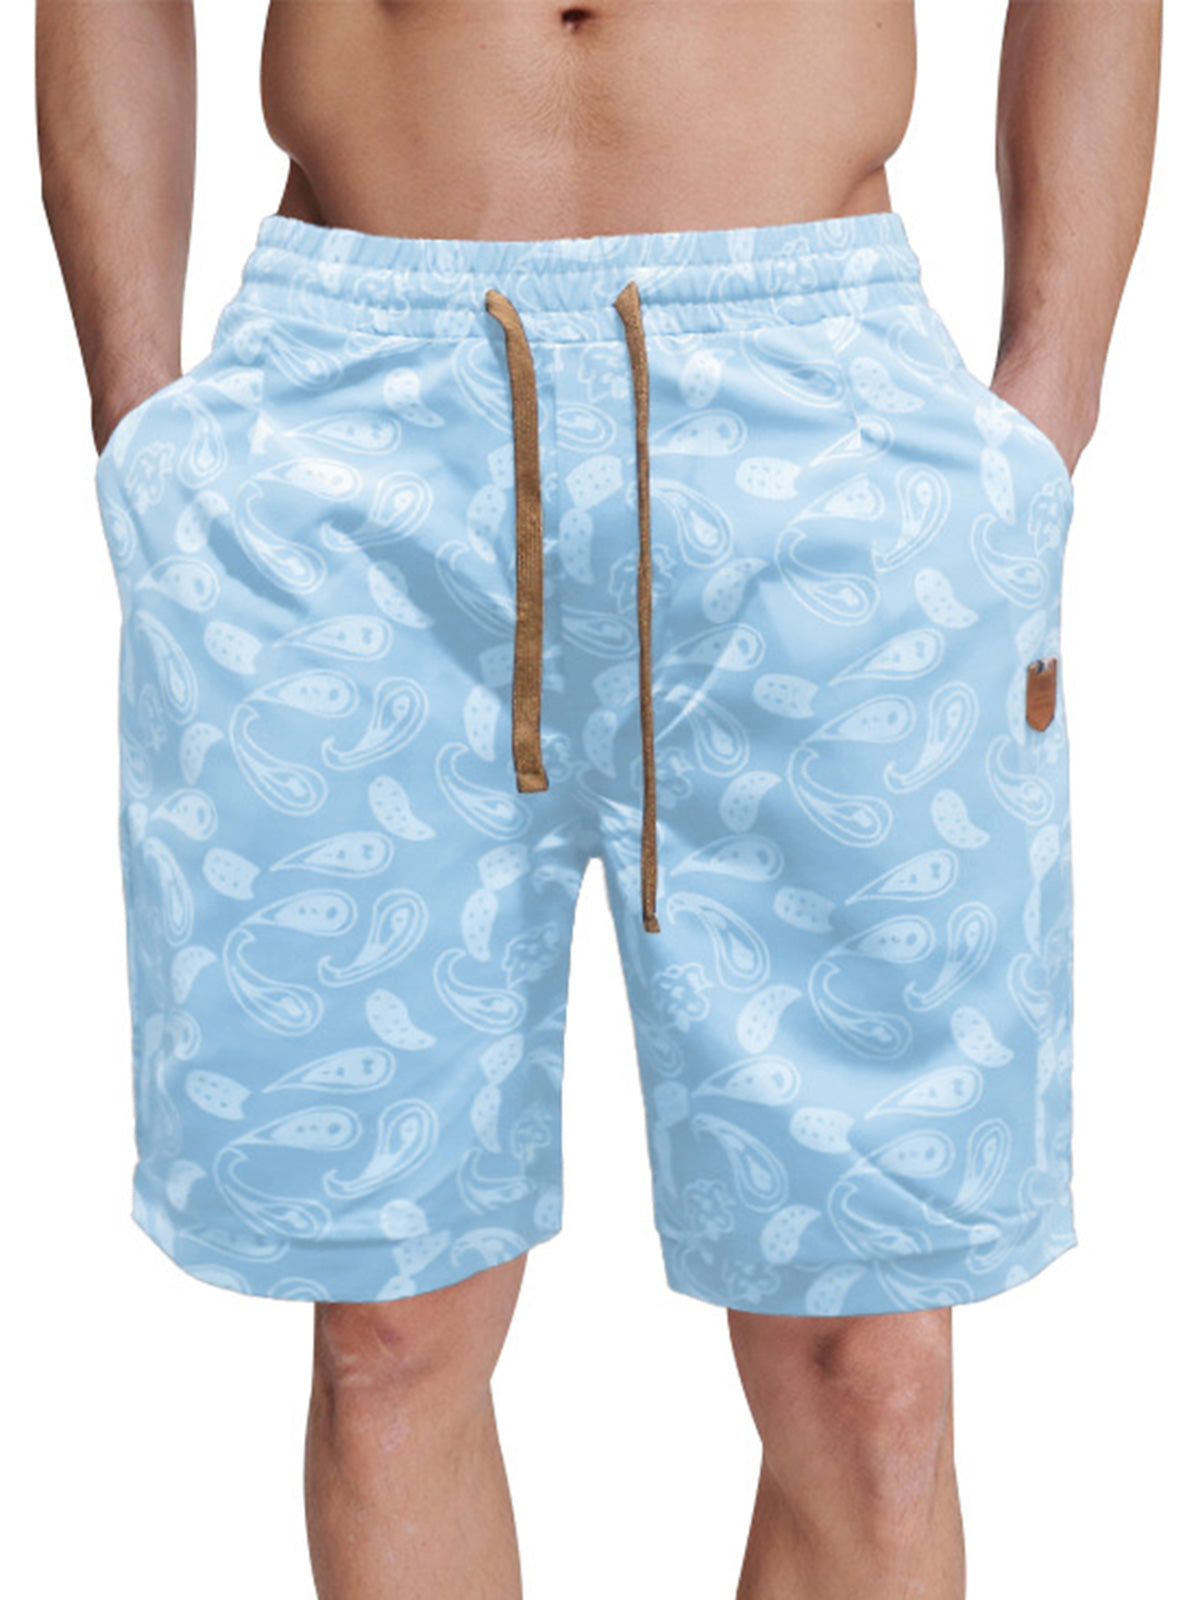 Men's Hawaiian Print Loose Beach Shorts